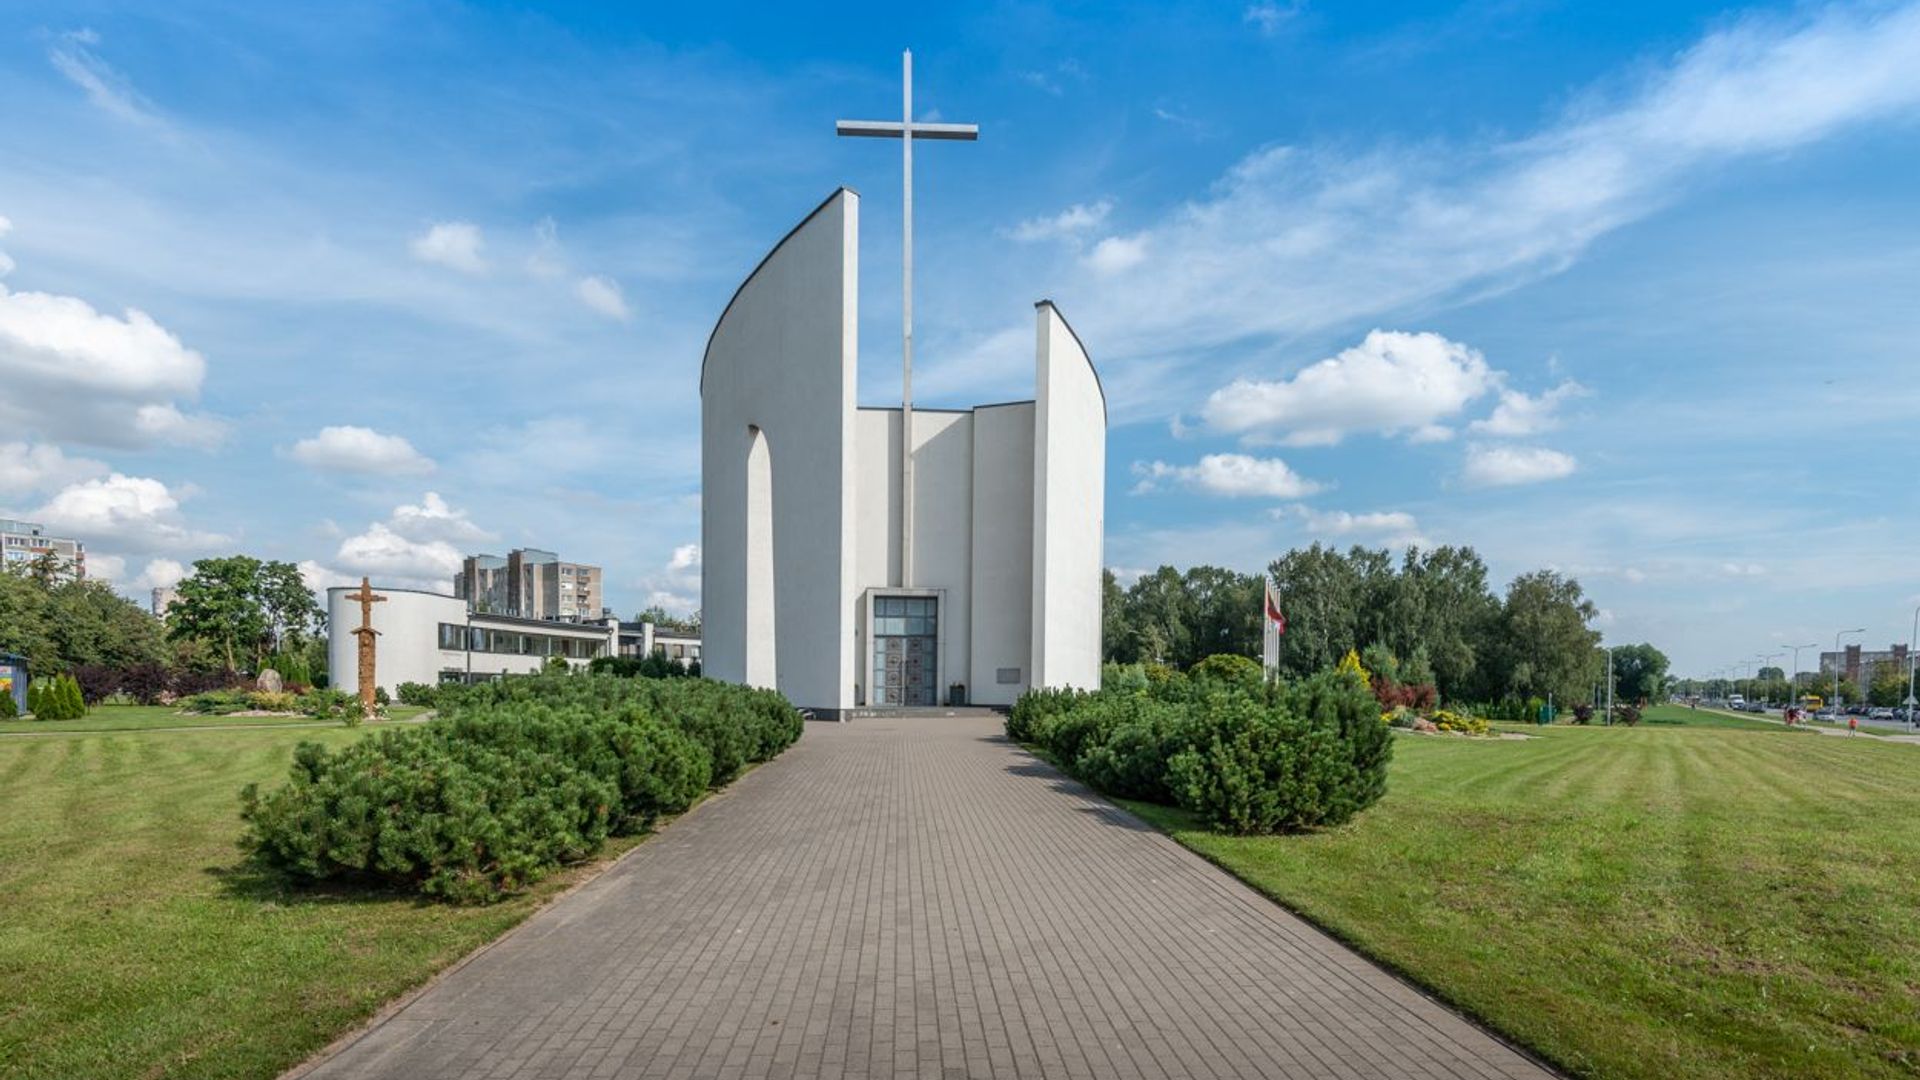 Šiaulių Švč. Mergelės Marijos Nekaltojo Prasidėjimo bažnyčia